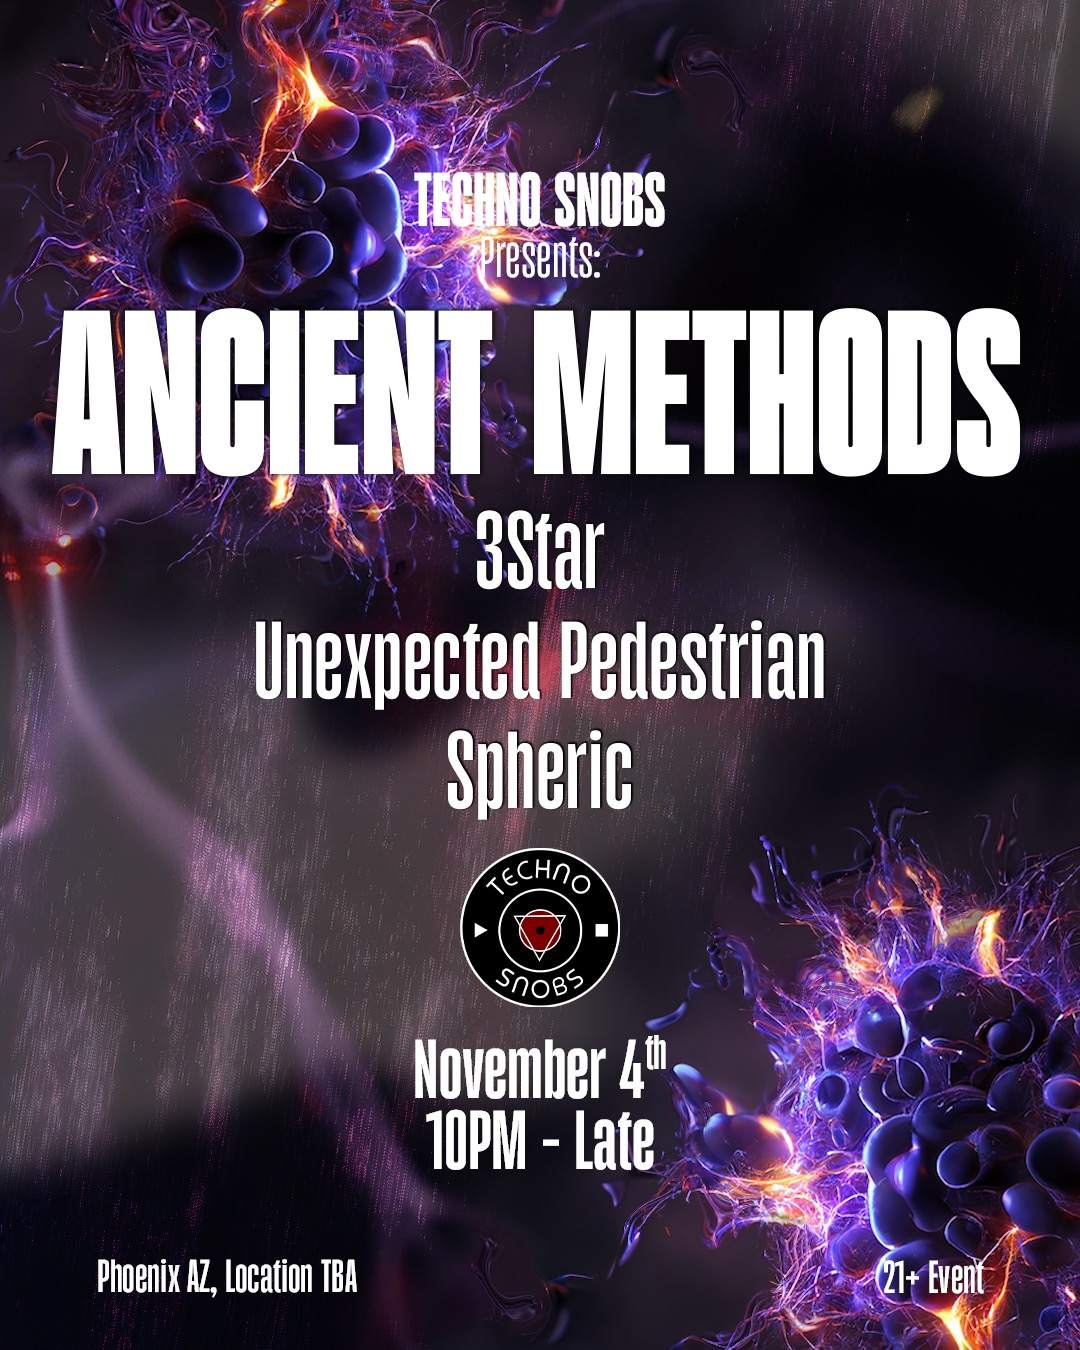 Techno Snobs presents: Ancient Methods - フライヤー表